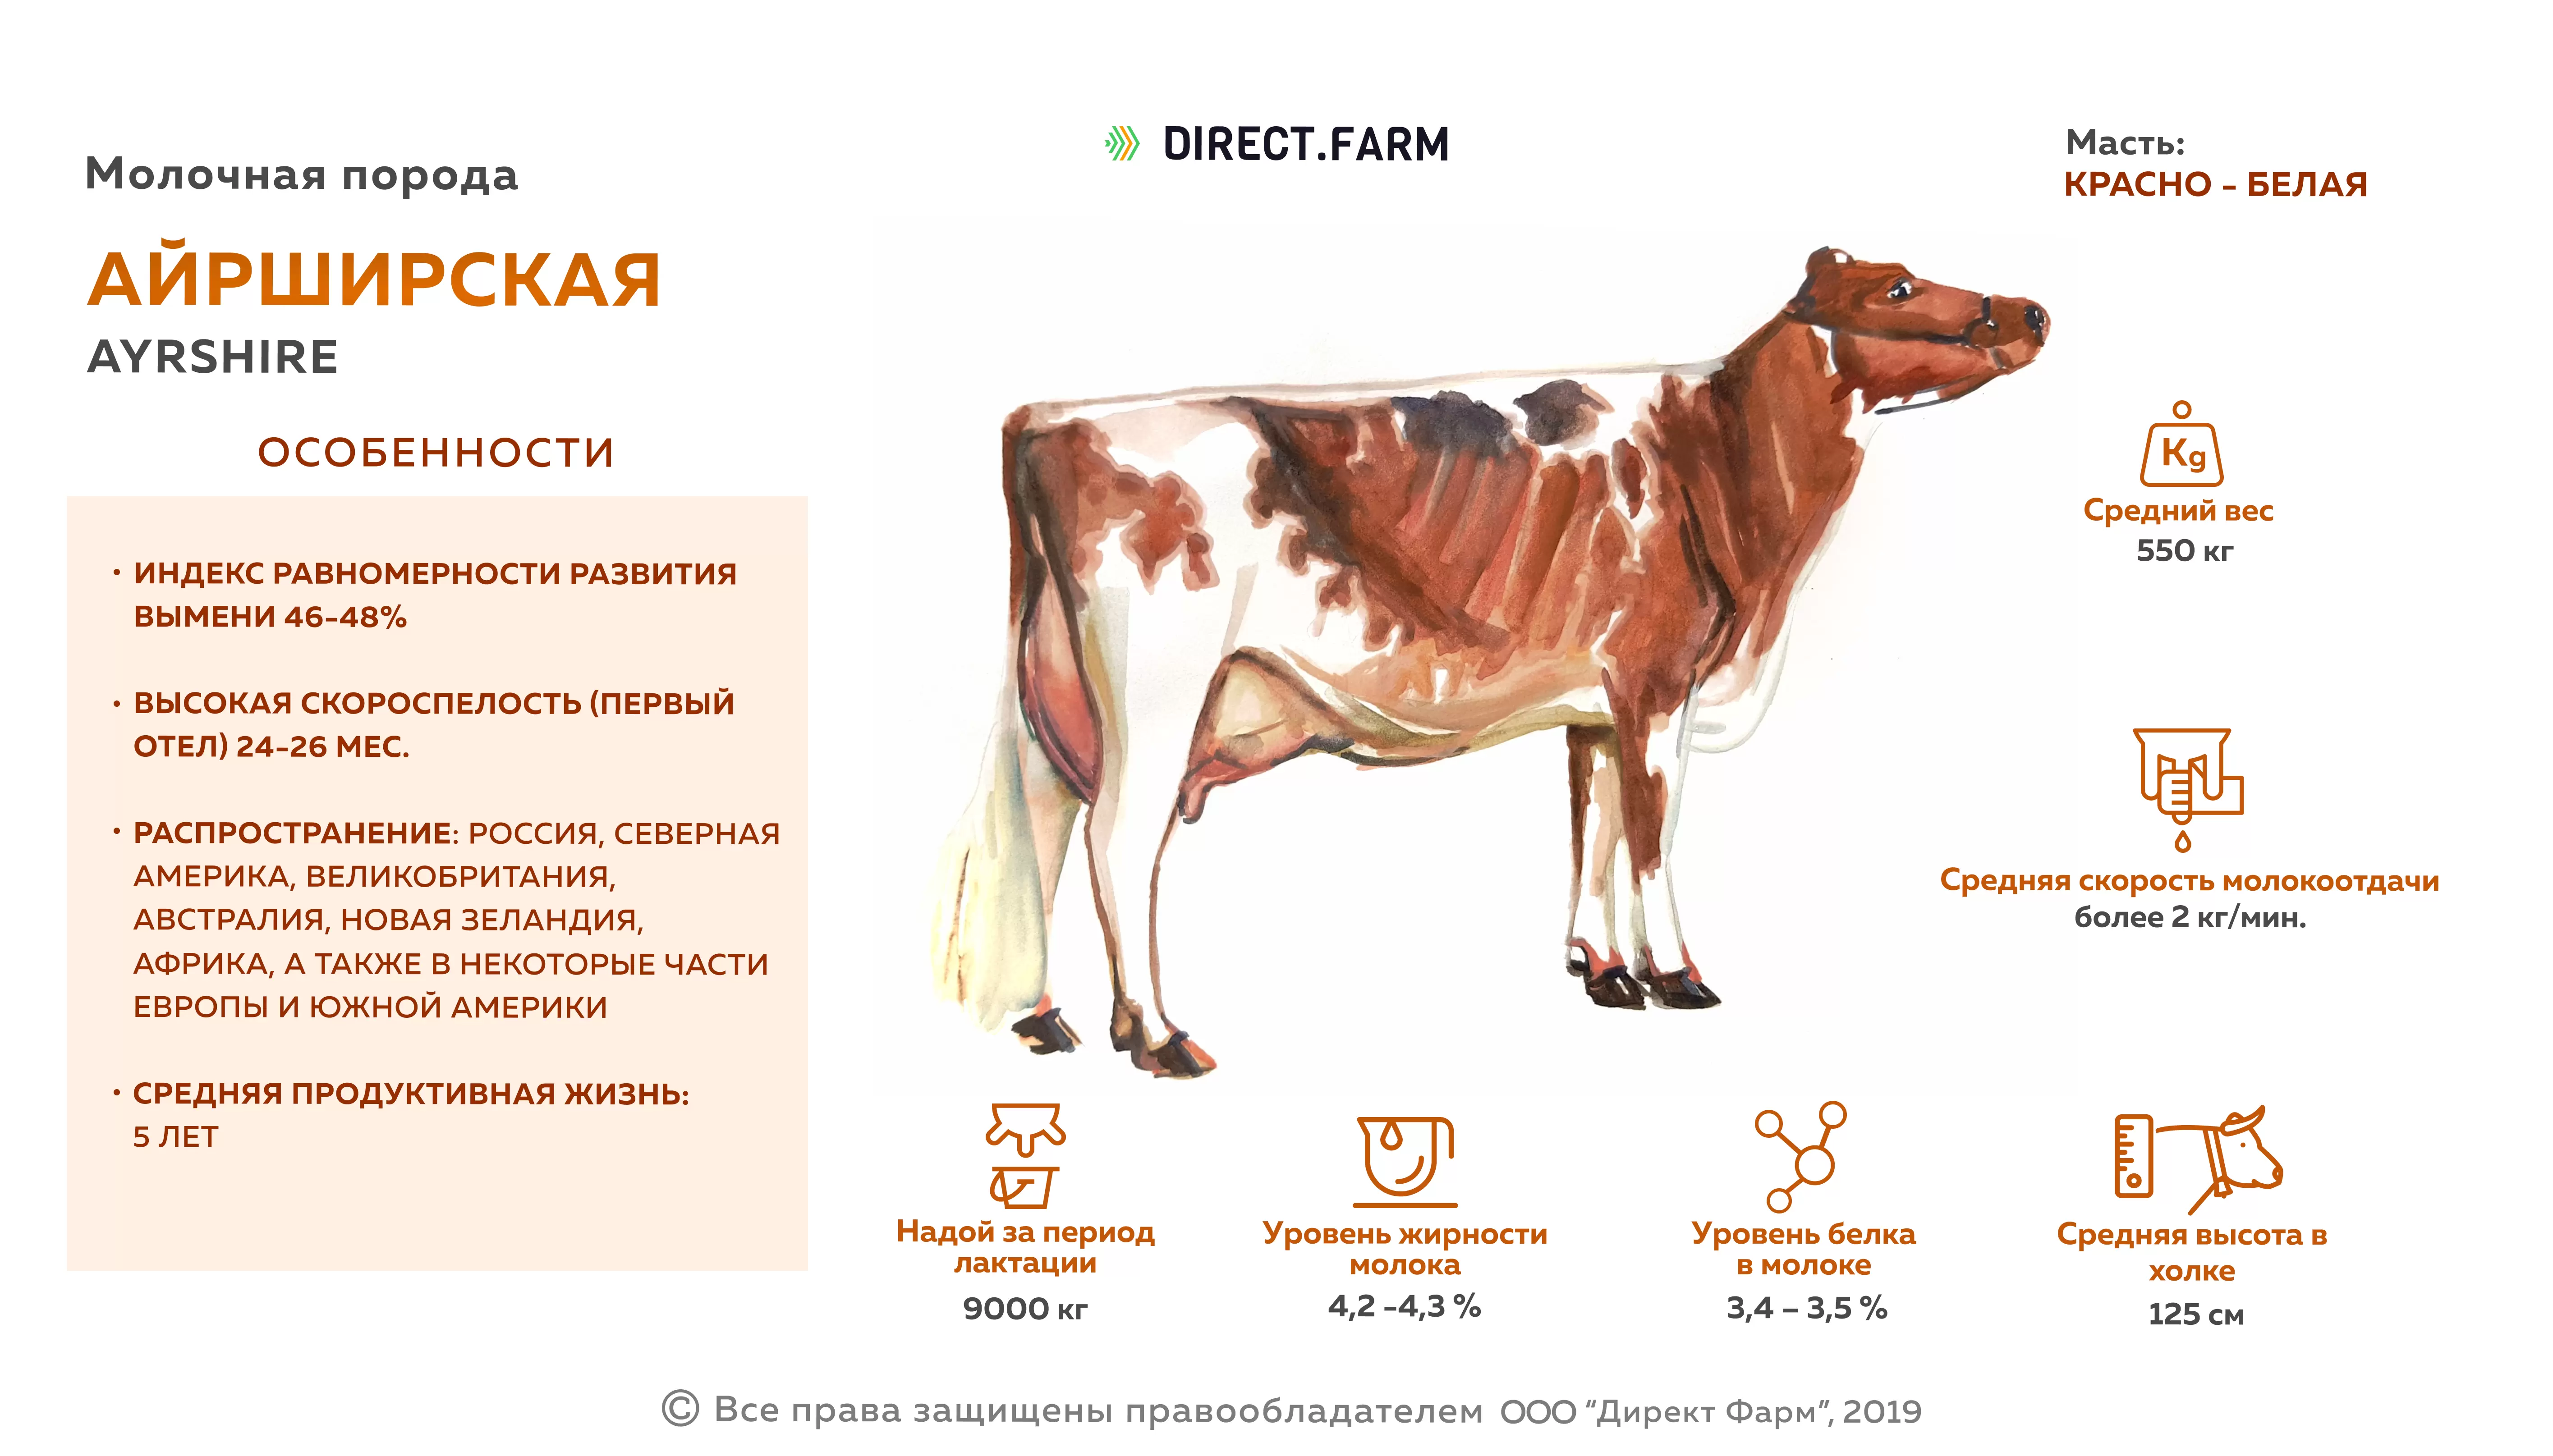 Удой коровы в год. Характеристика коров айрширской породы. Молочная продуктивность айрширской породы коров. Корова айрширской породы параметры. Стандарт породы симментальской породы коров.